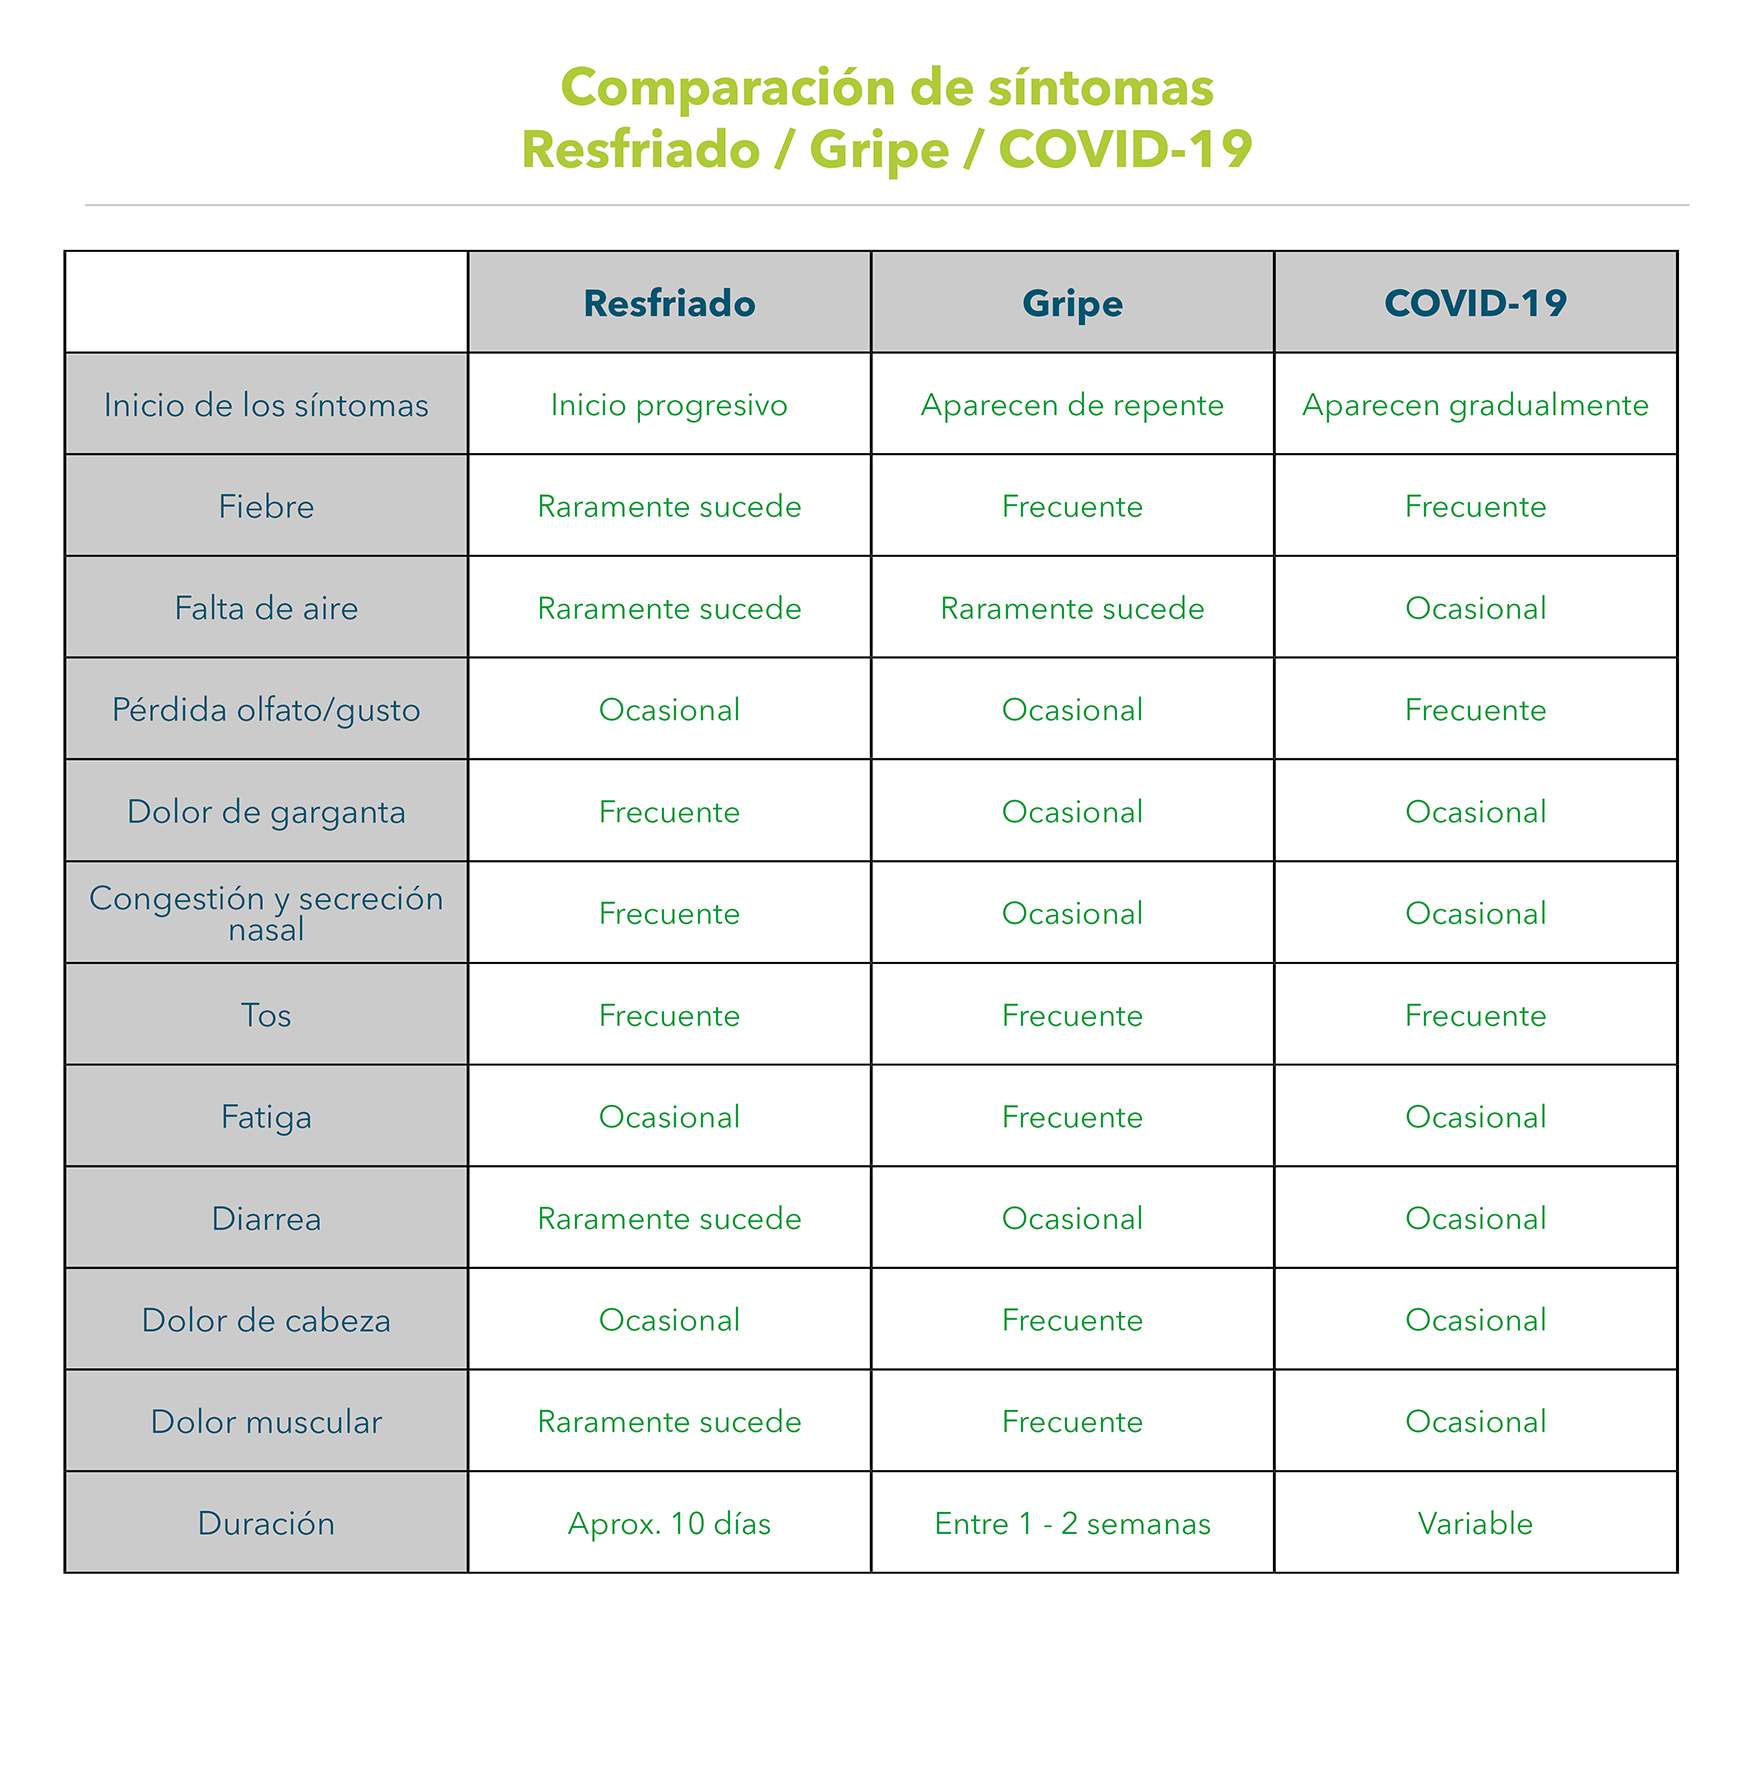 Comparación de síntomas entre resfriado, gripe y COVID-19